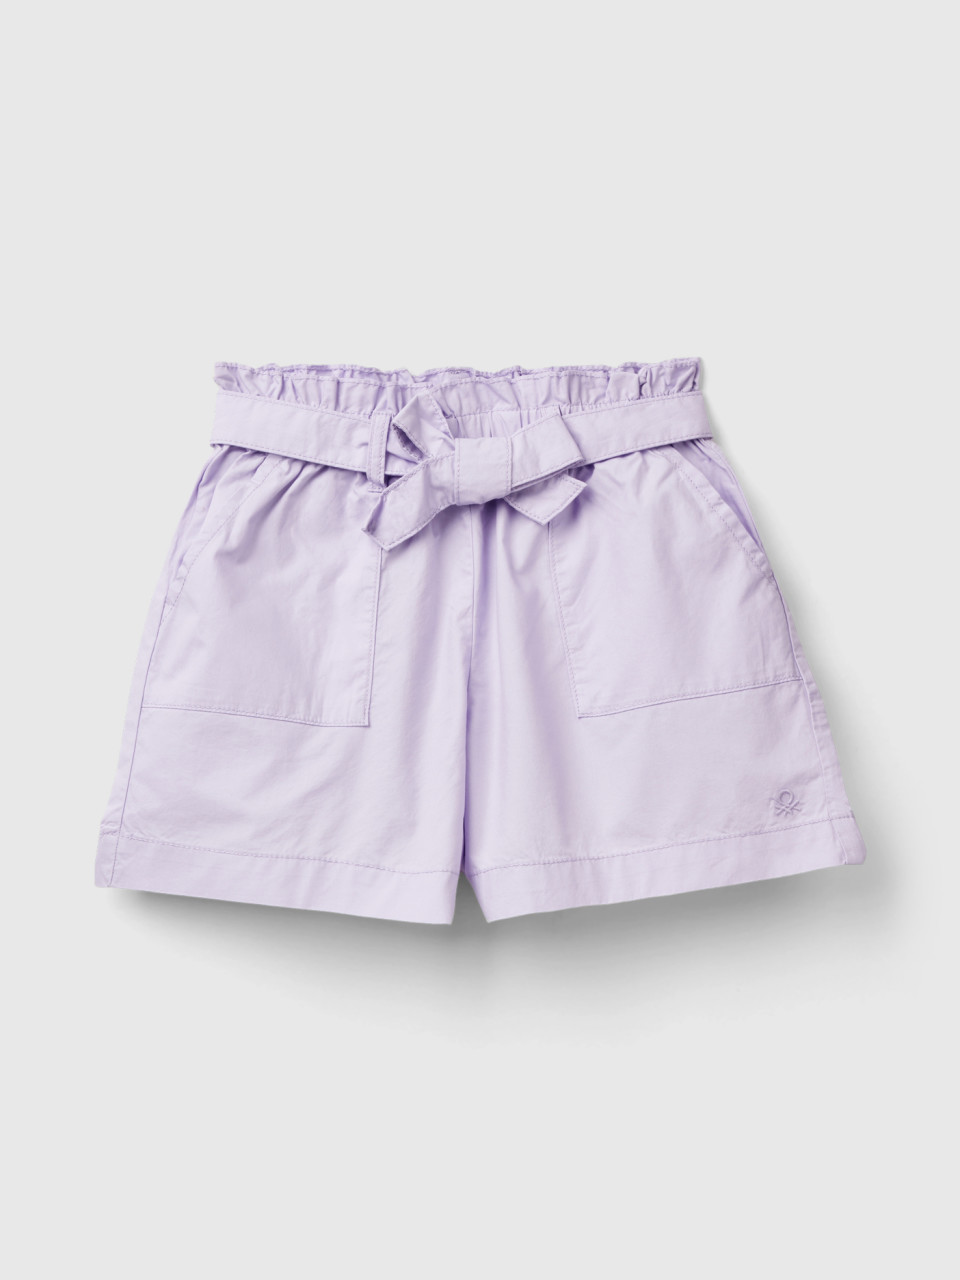 Benetton, Paperbag Shorts, Lilac, Kids